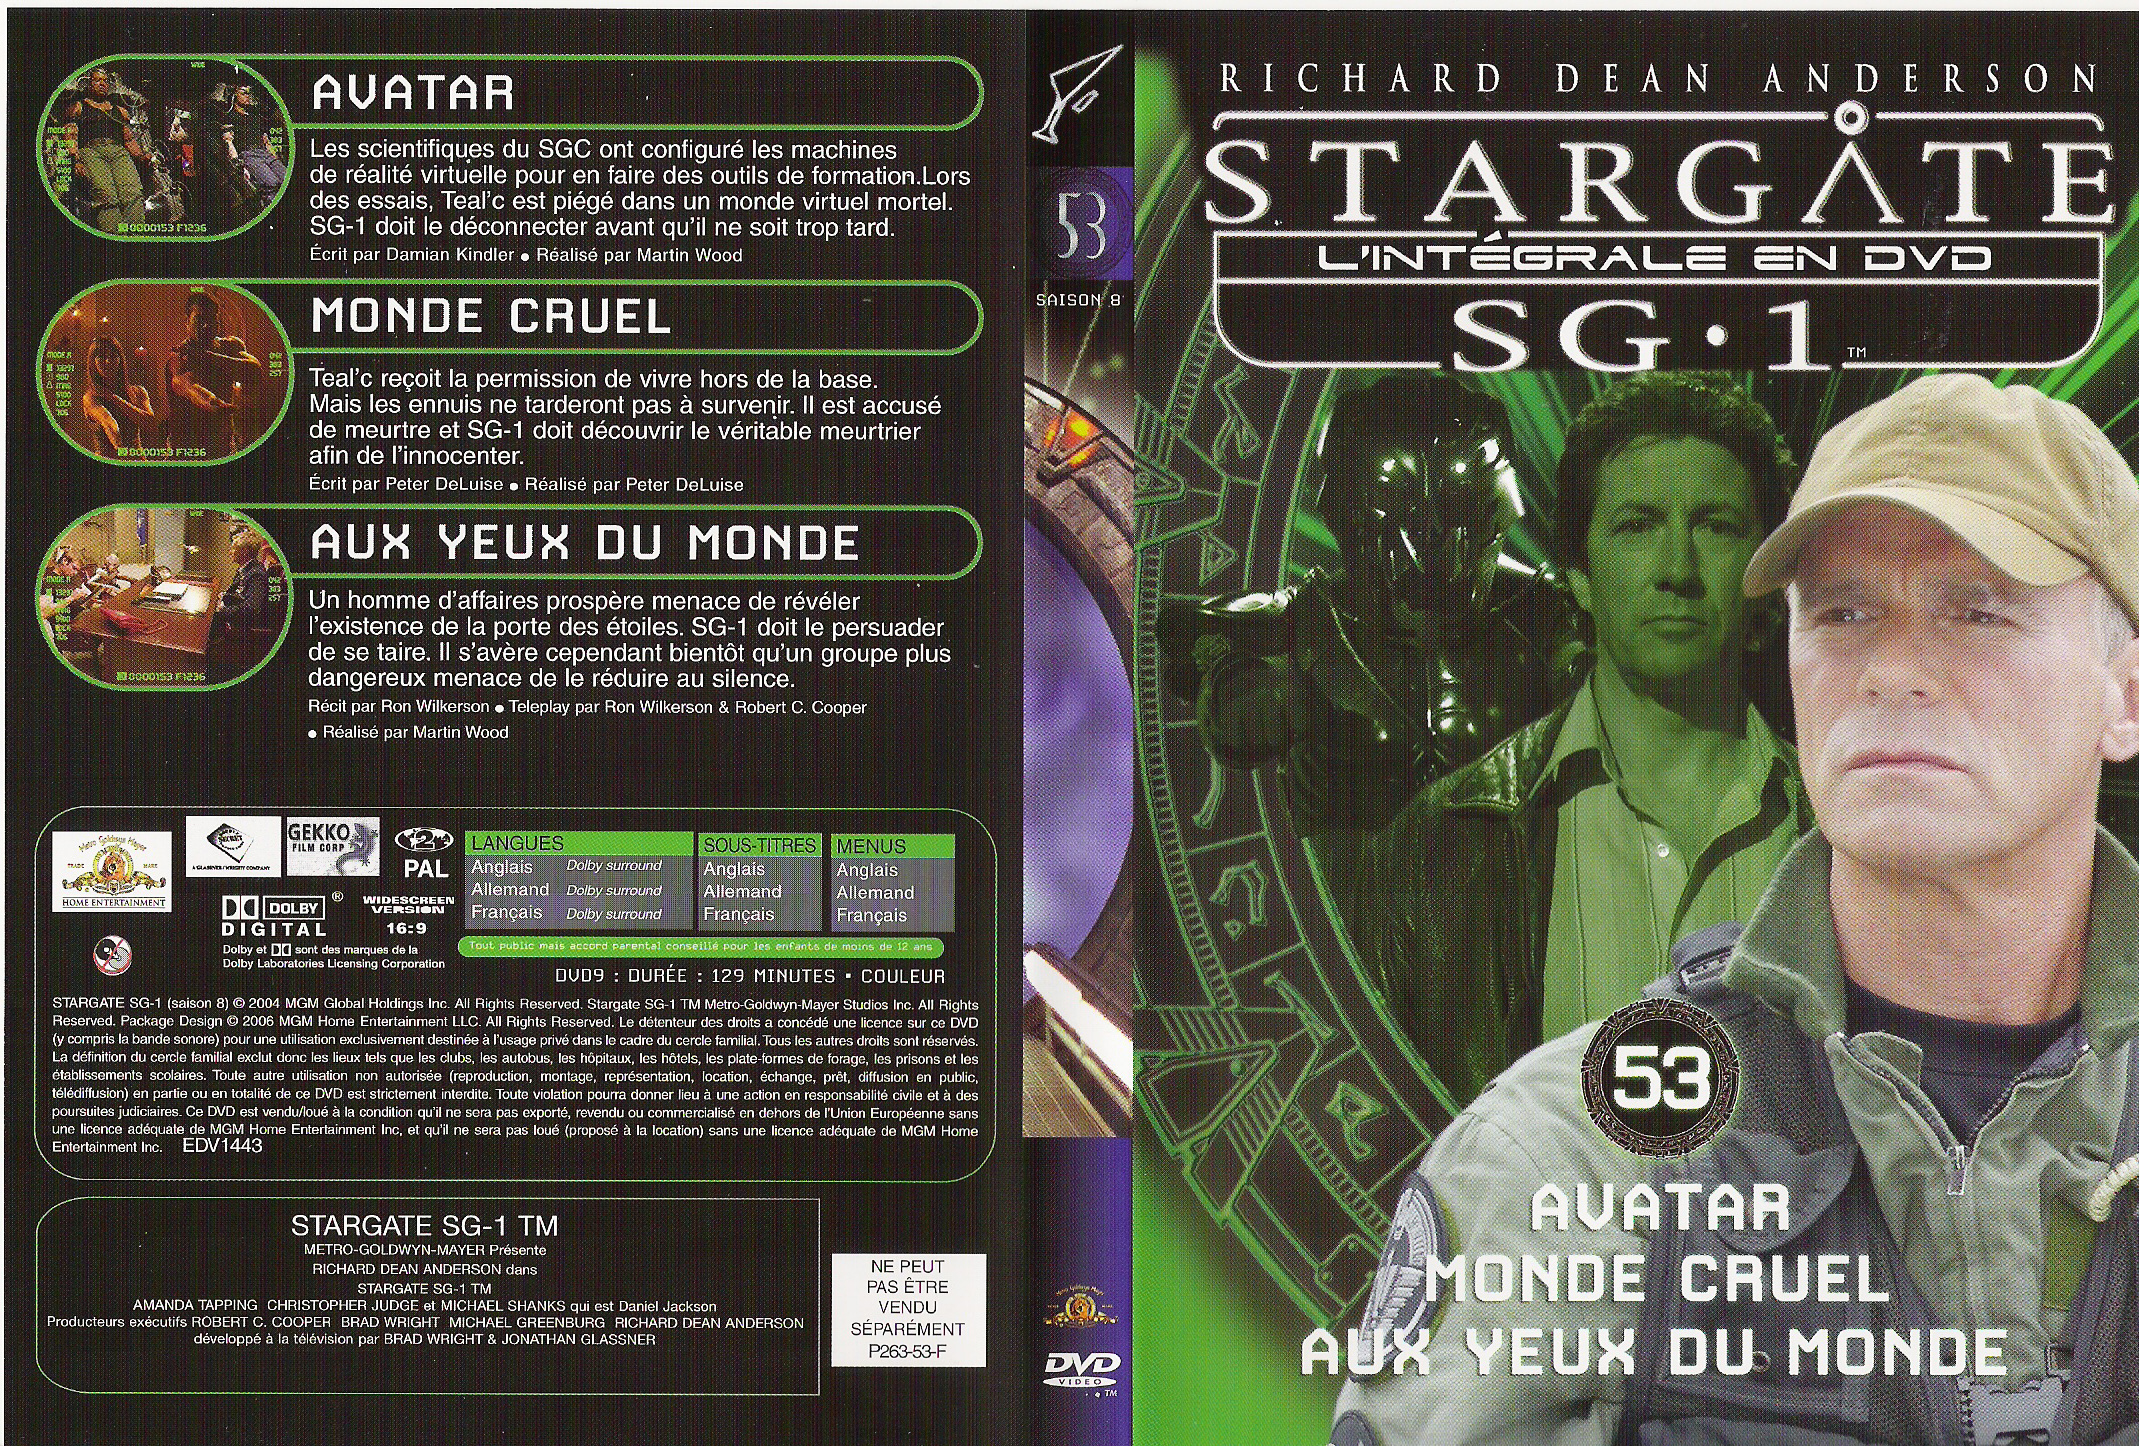 Jaquette DVD Stargate saison 8 vol 53